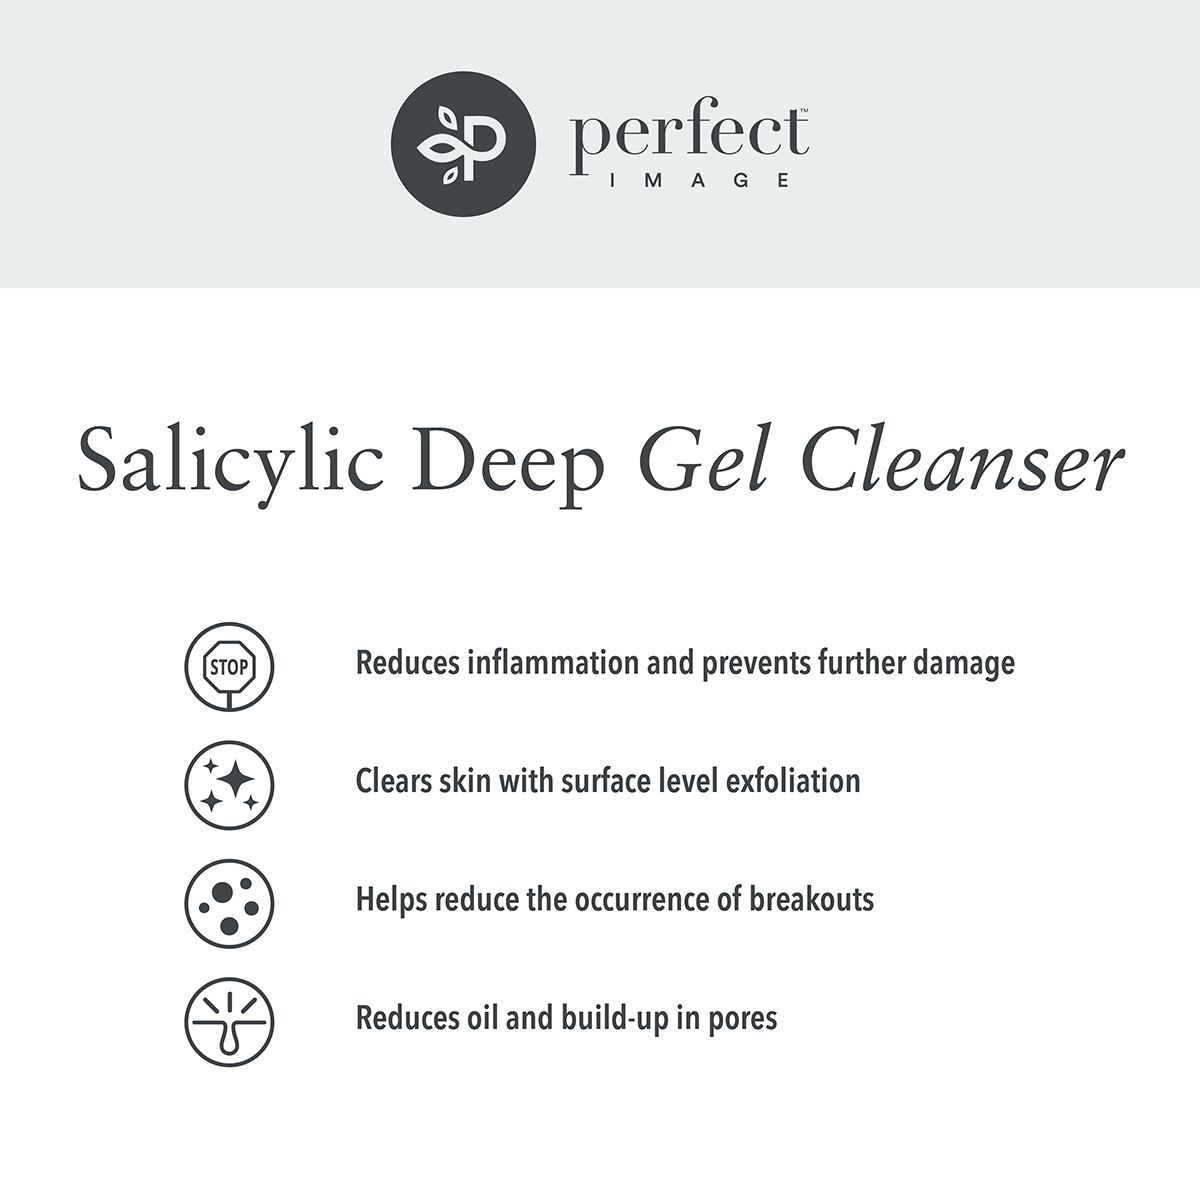 Salicylic Deep Gel Cleanser